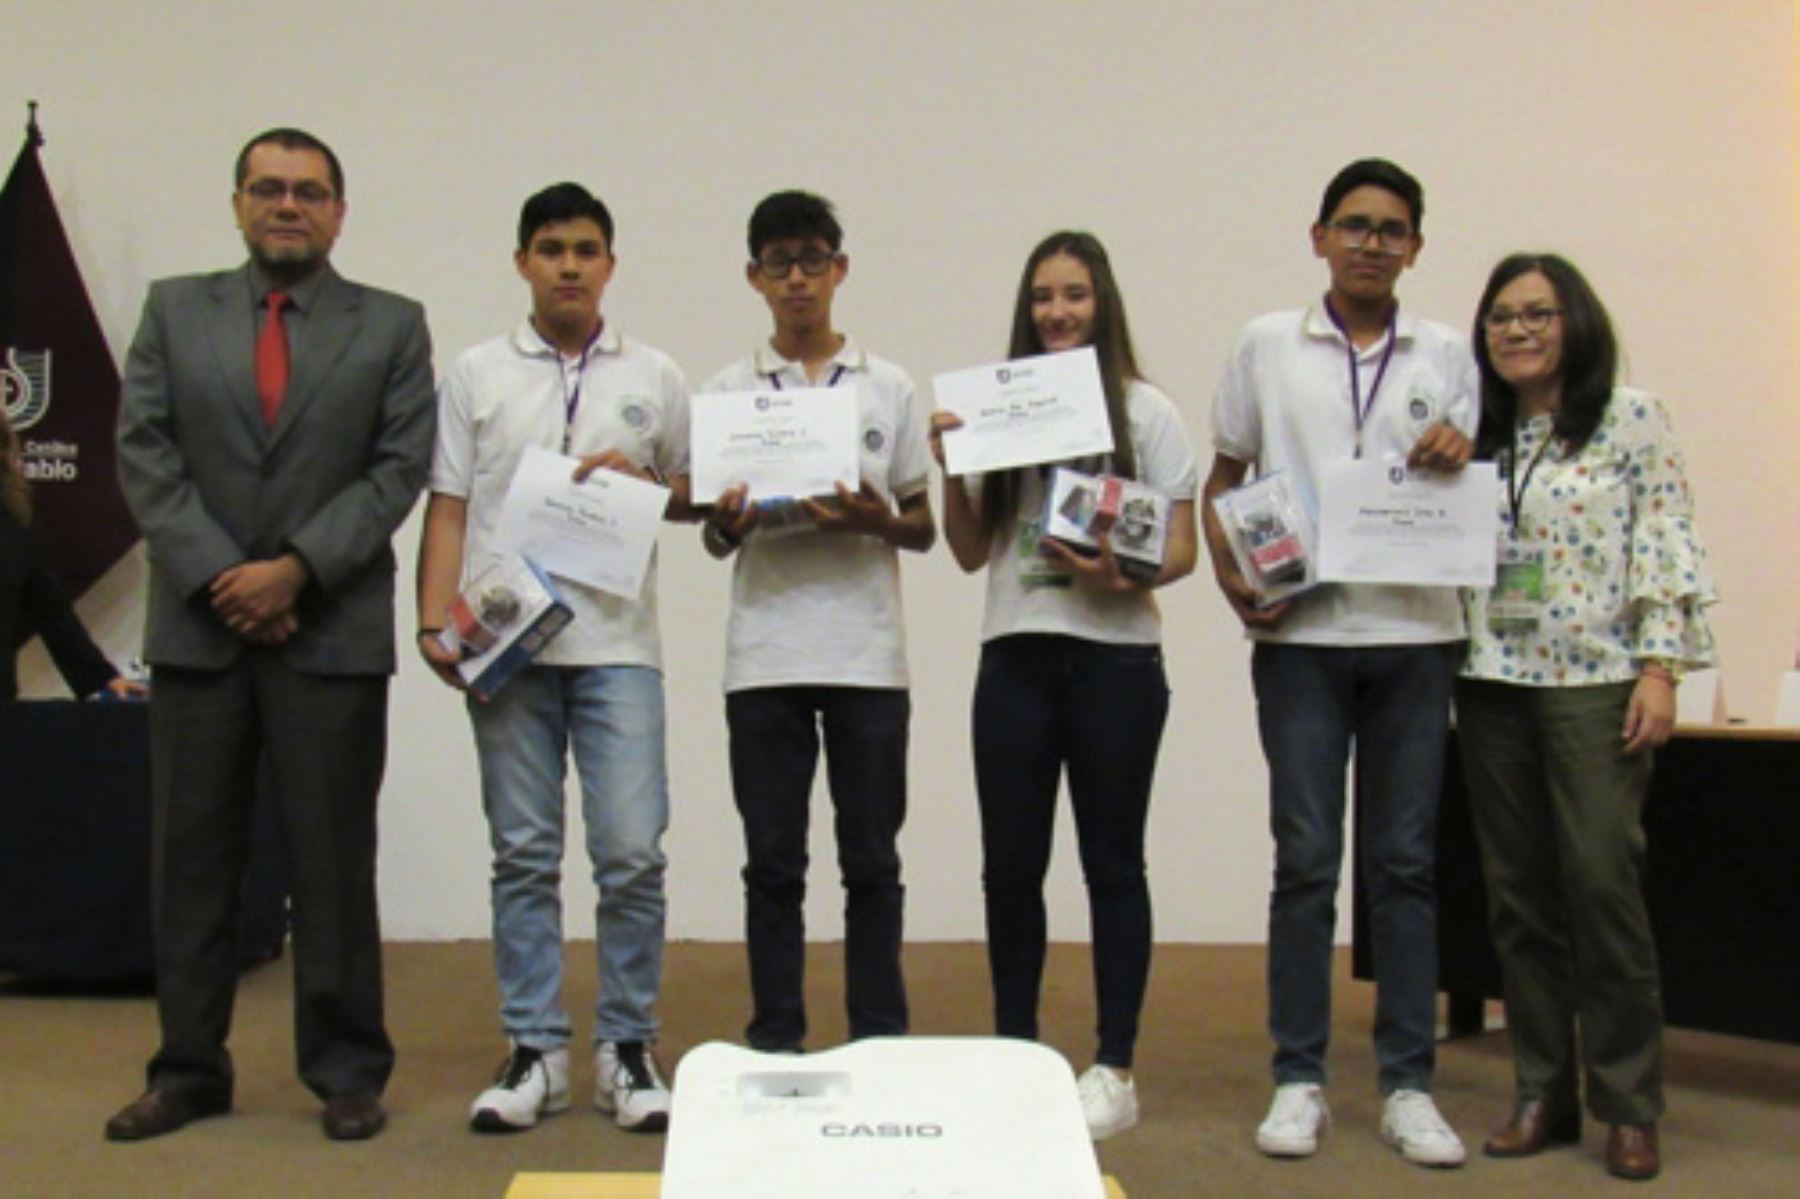 Proyecto escolar de Arequipa gana concurso contra el bullying. ANDINA/Difusión